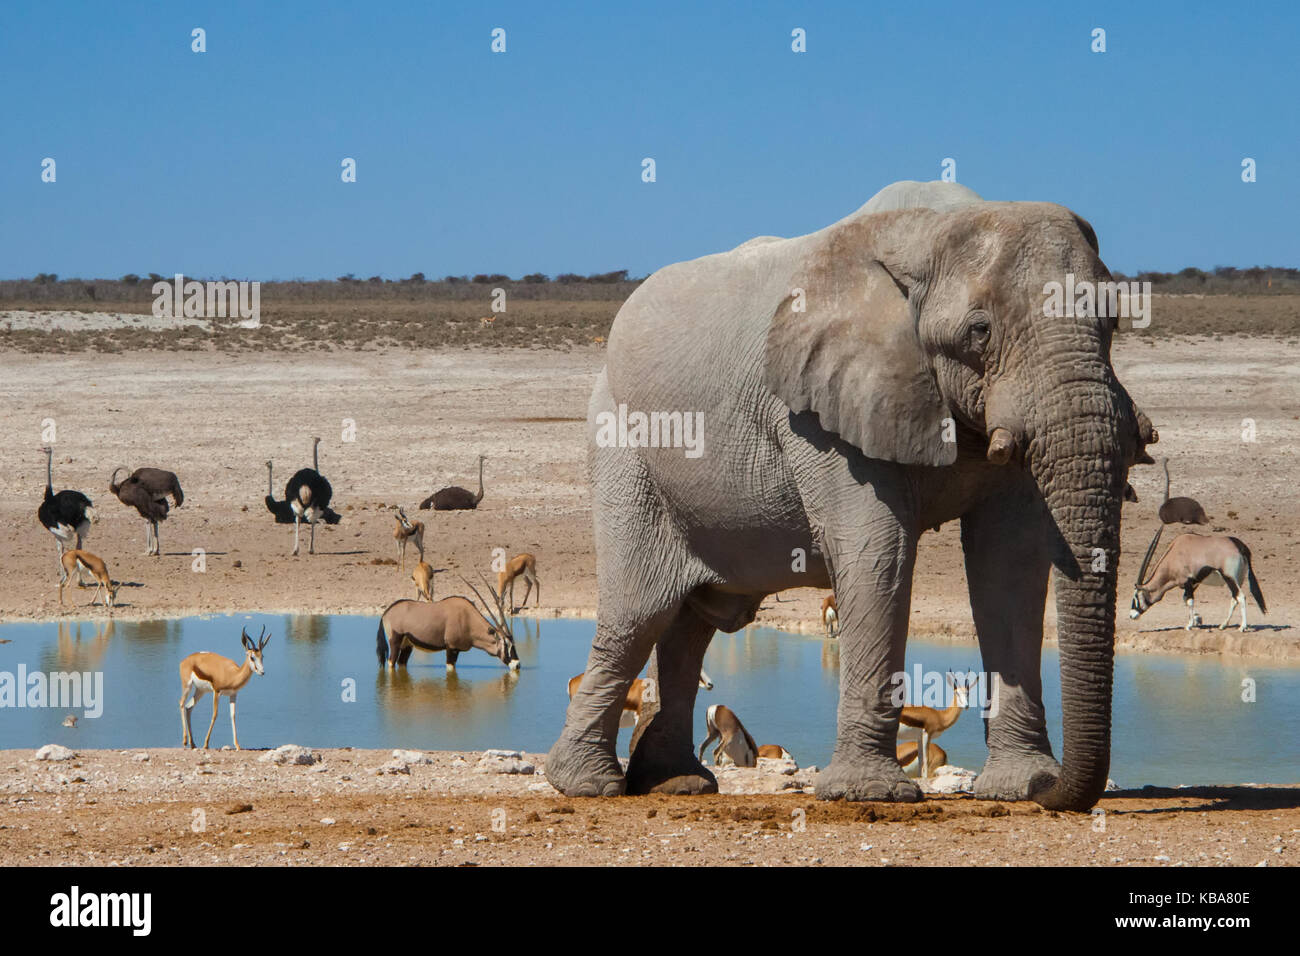 Wildlife congregates at a water hole, Etosha National Park, Namibia Stock Photo